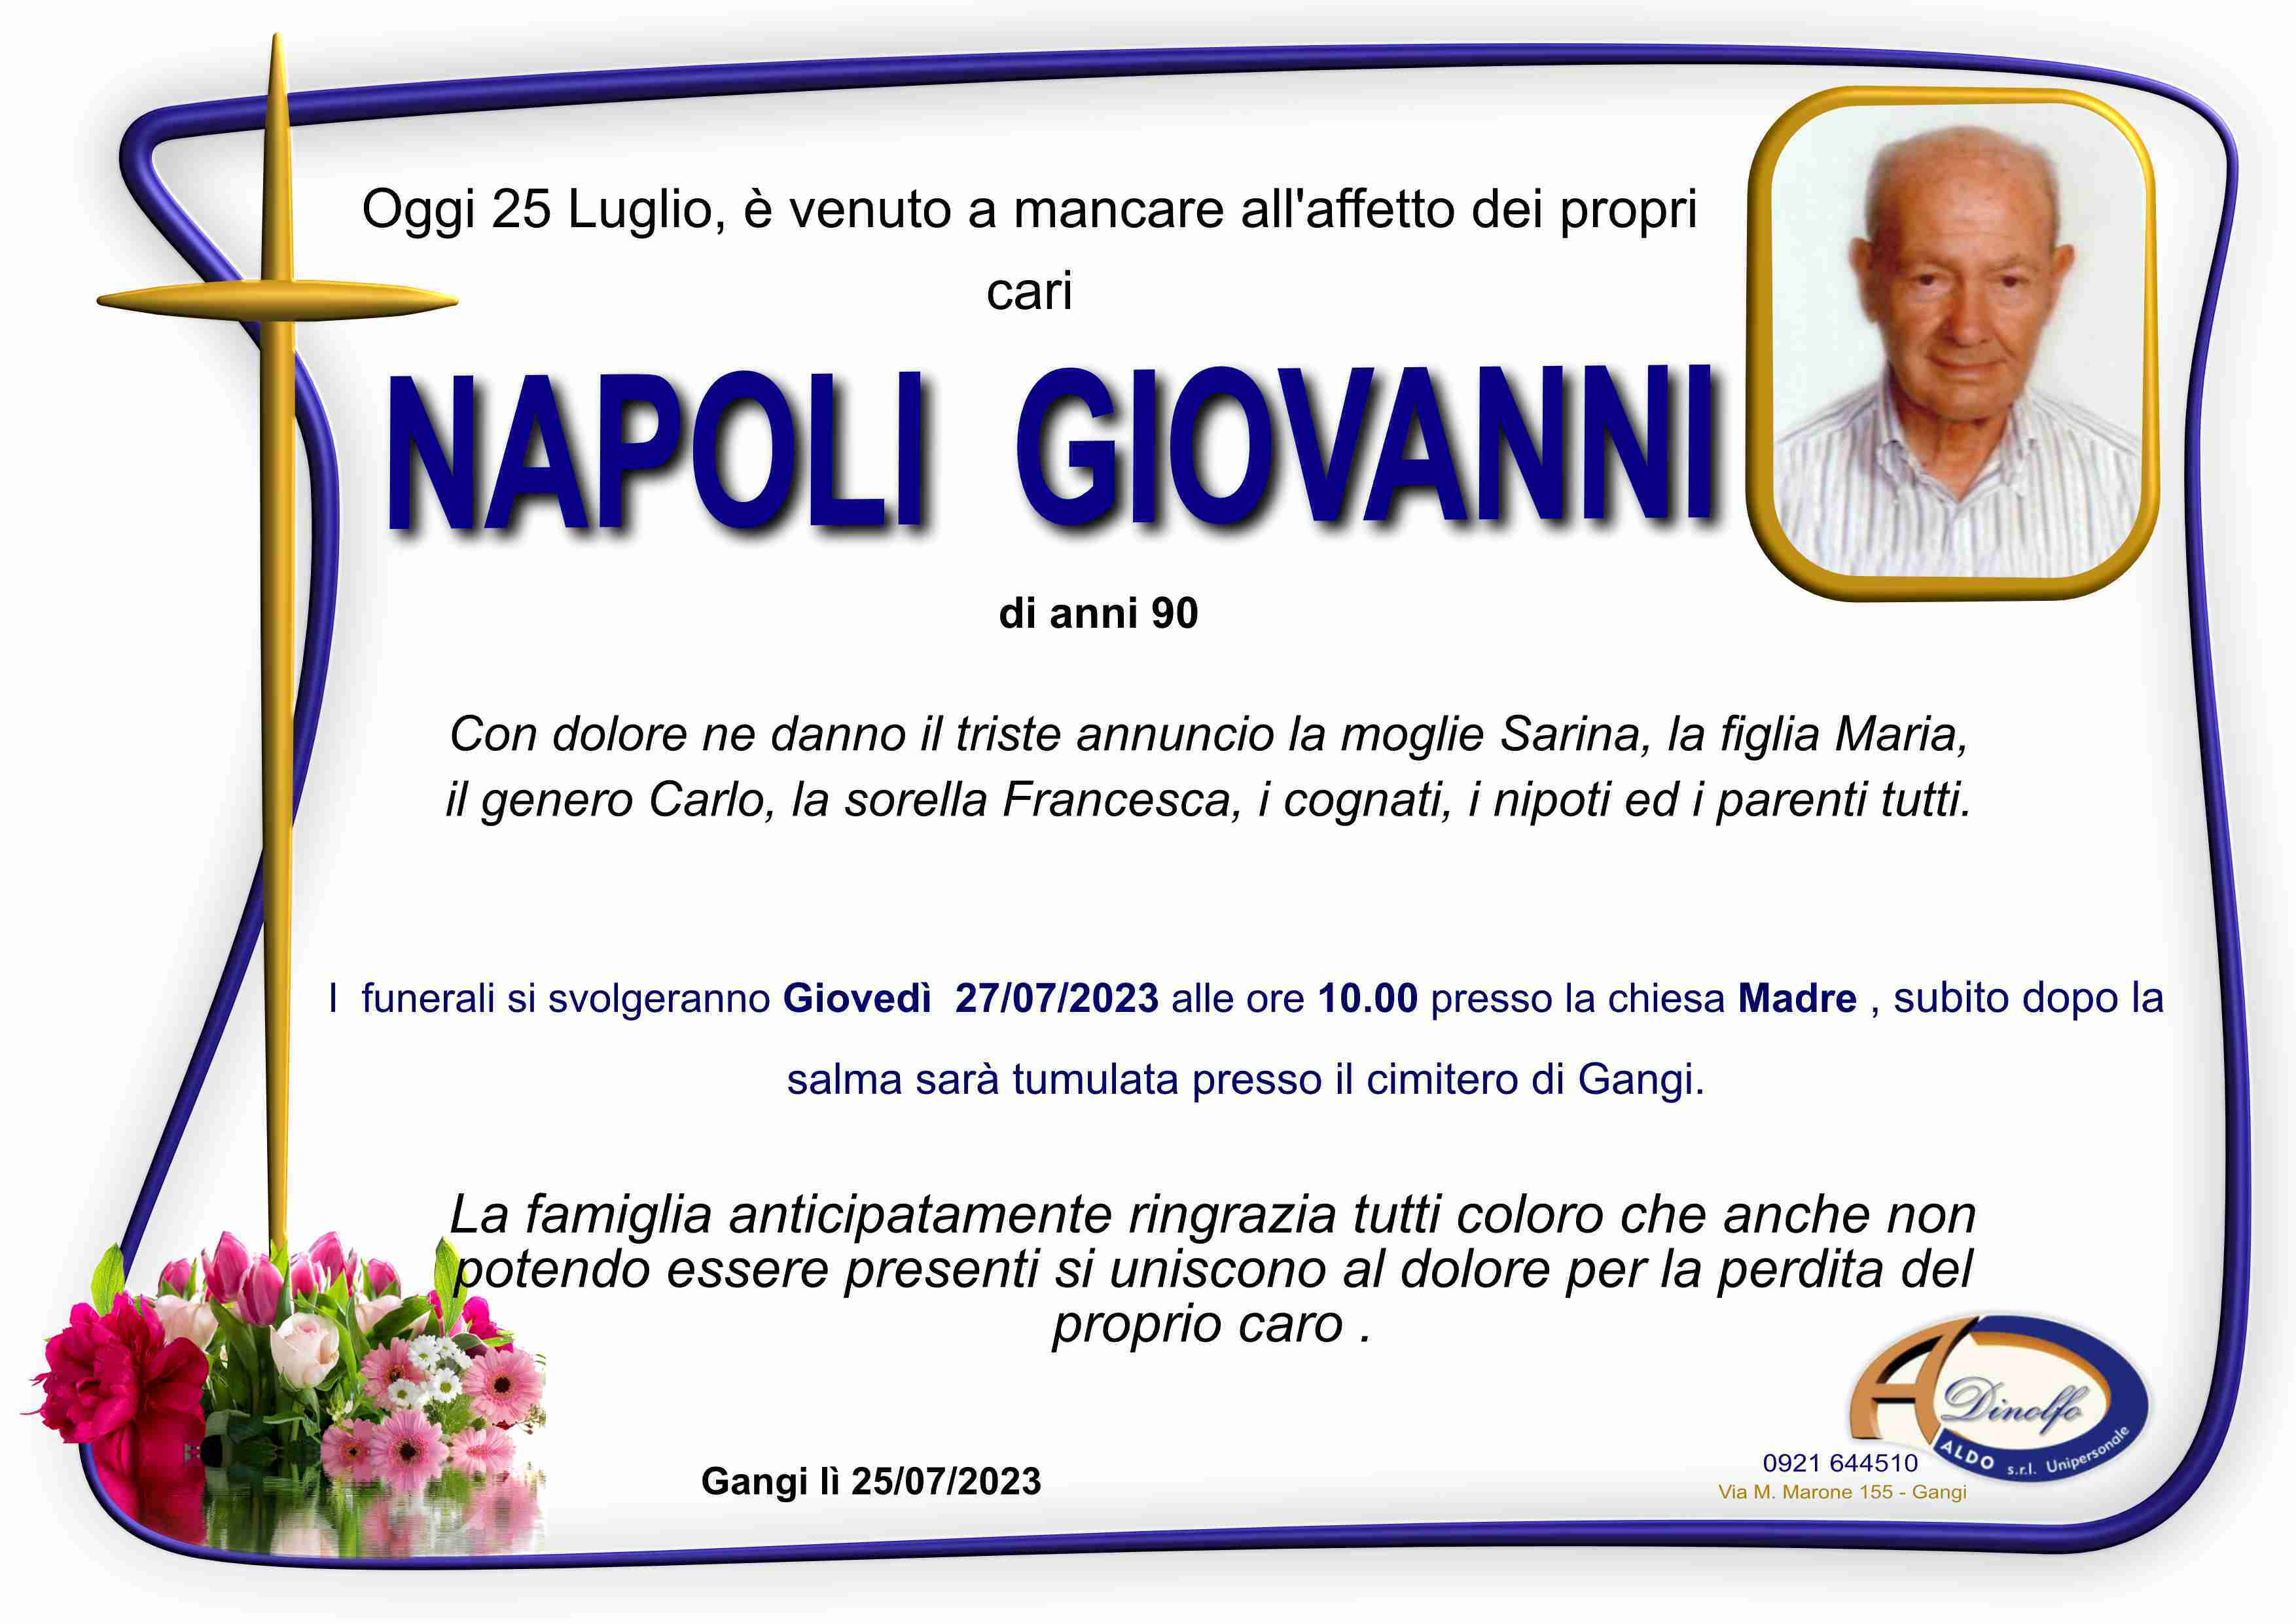 Giovanni Napoli